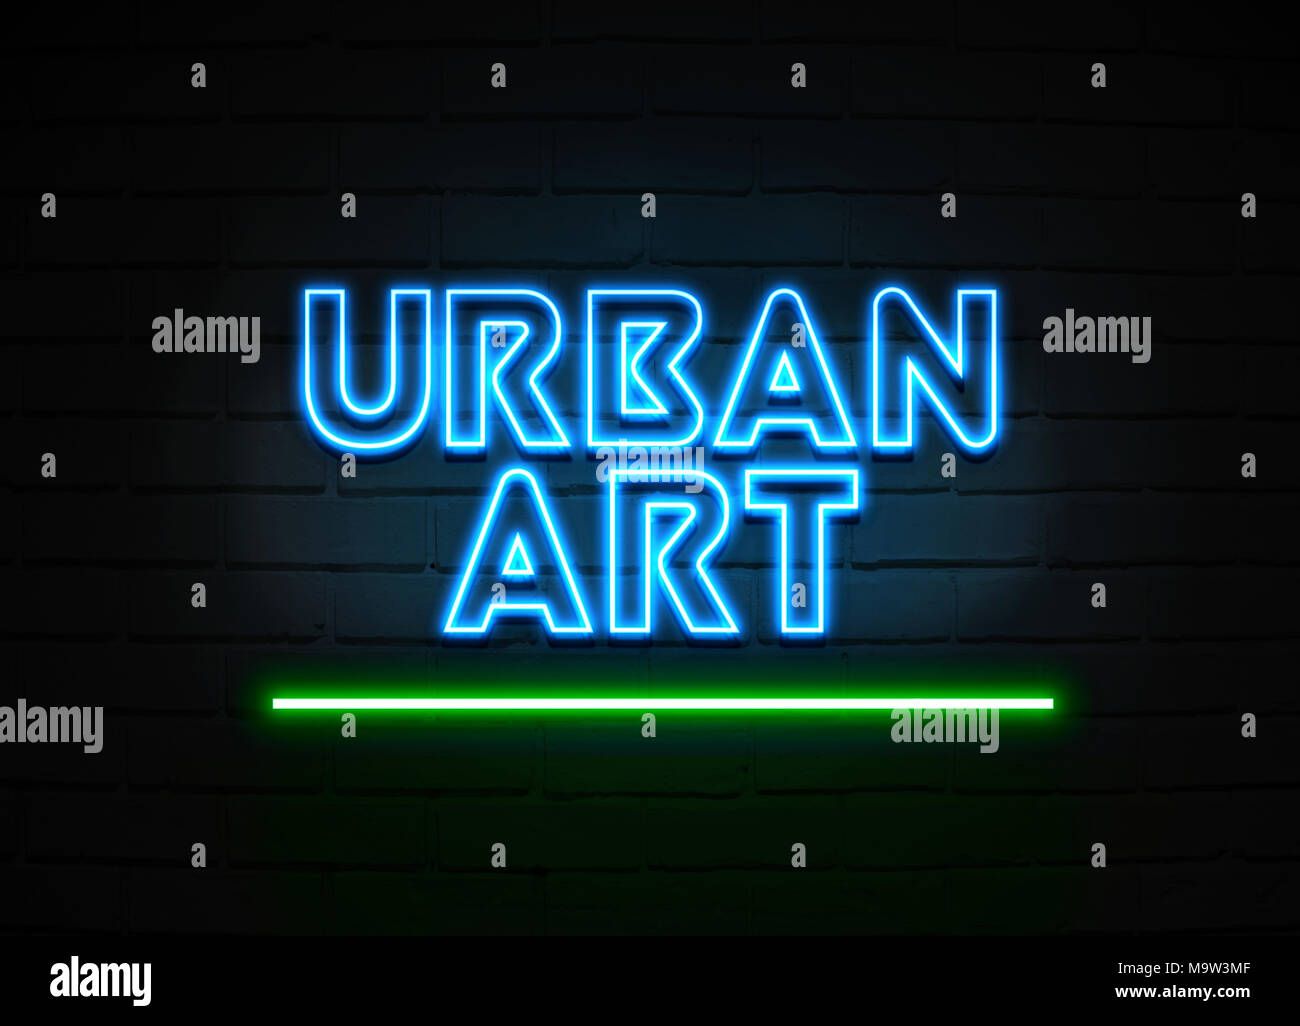 Urban Art Leuchtreklame - glühende Leuchtreklame auf brickwall Wand - 3D-Royalty Free Stock Illustration dargestellt. Stockfoto